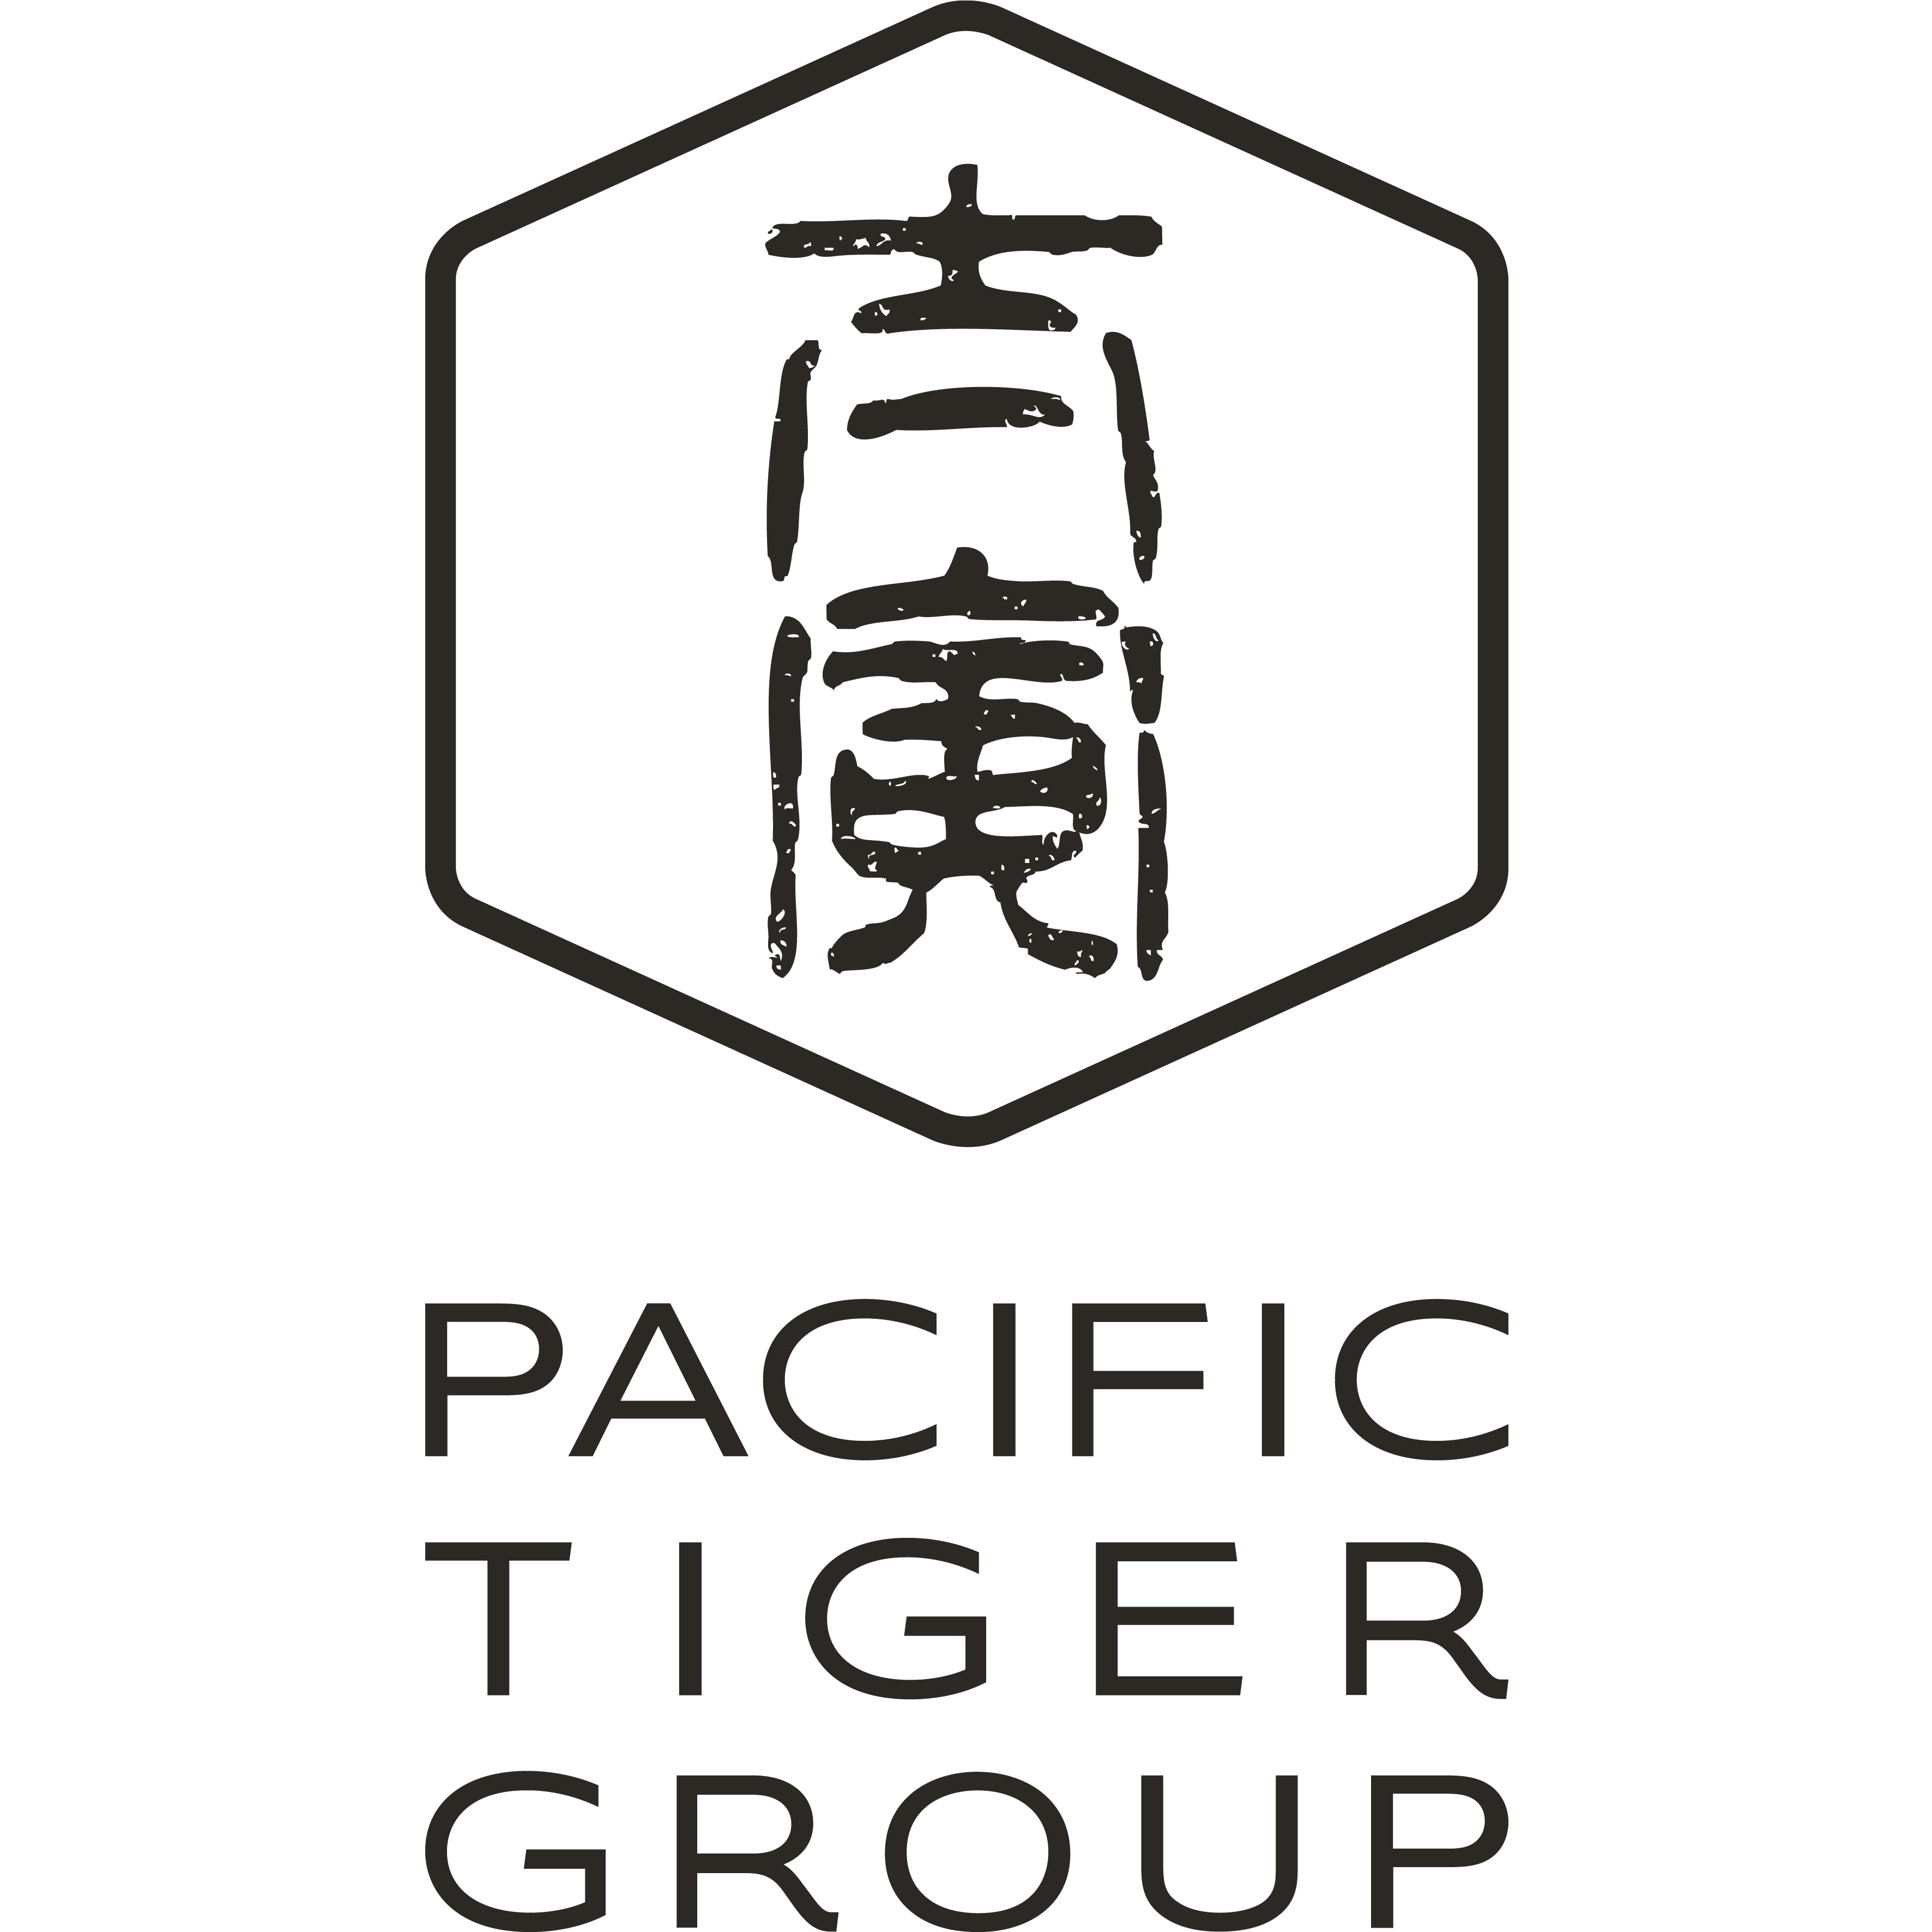 Tiger Group - Owner - tiger group store | LinkedIn